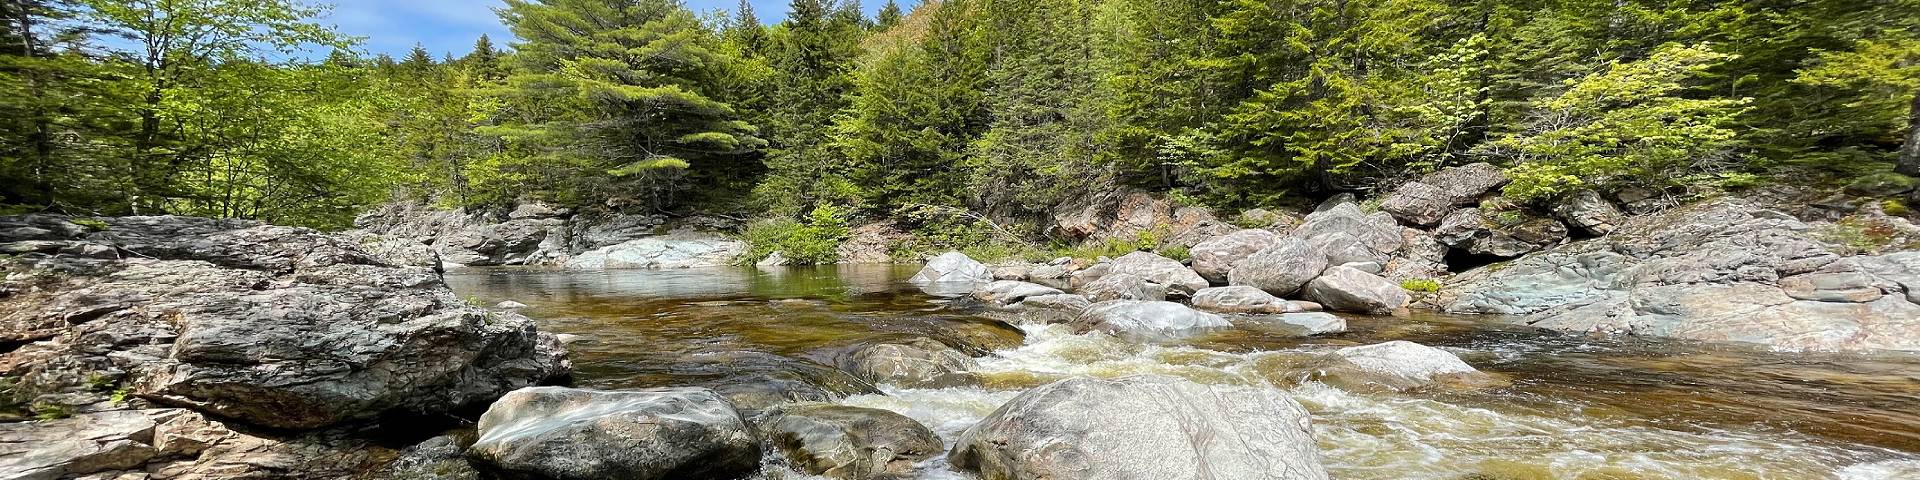 Une rivière rocheuse et des arbres